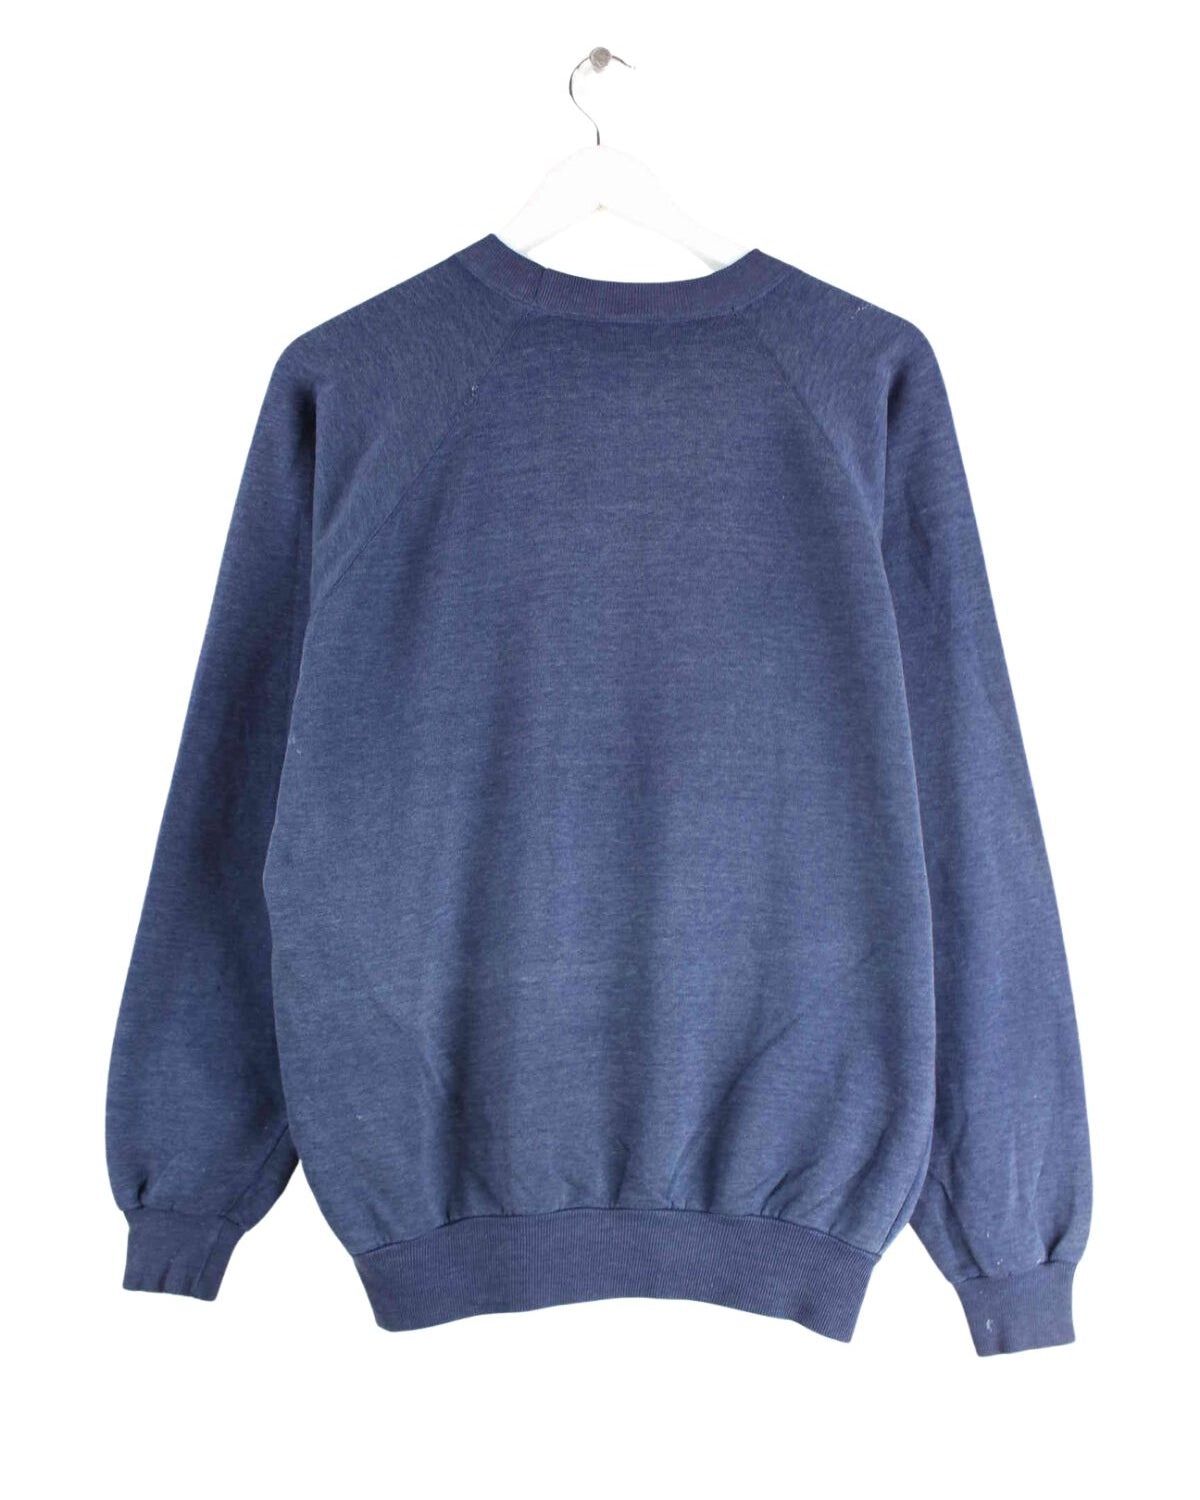 Nike 70s Vintage Print Sweater Blau M (back image)